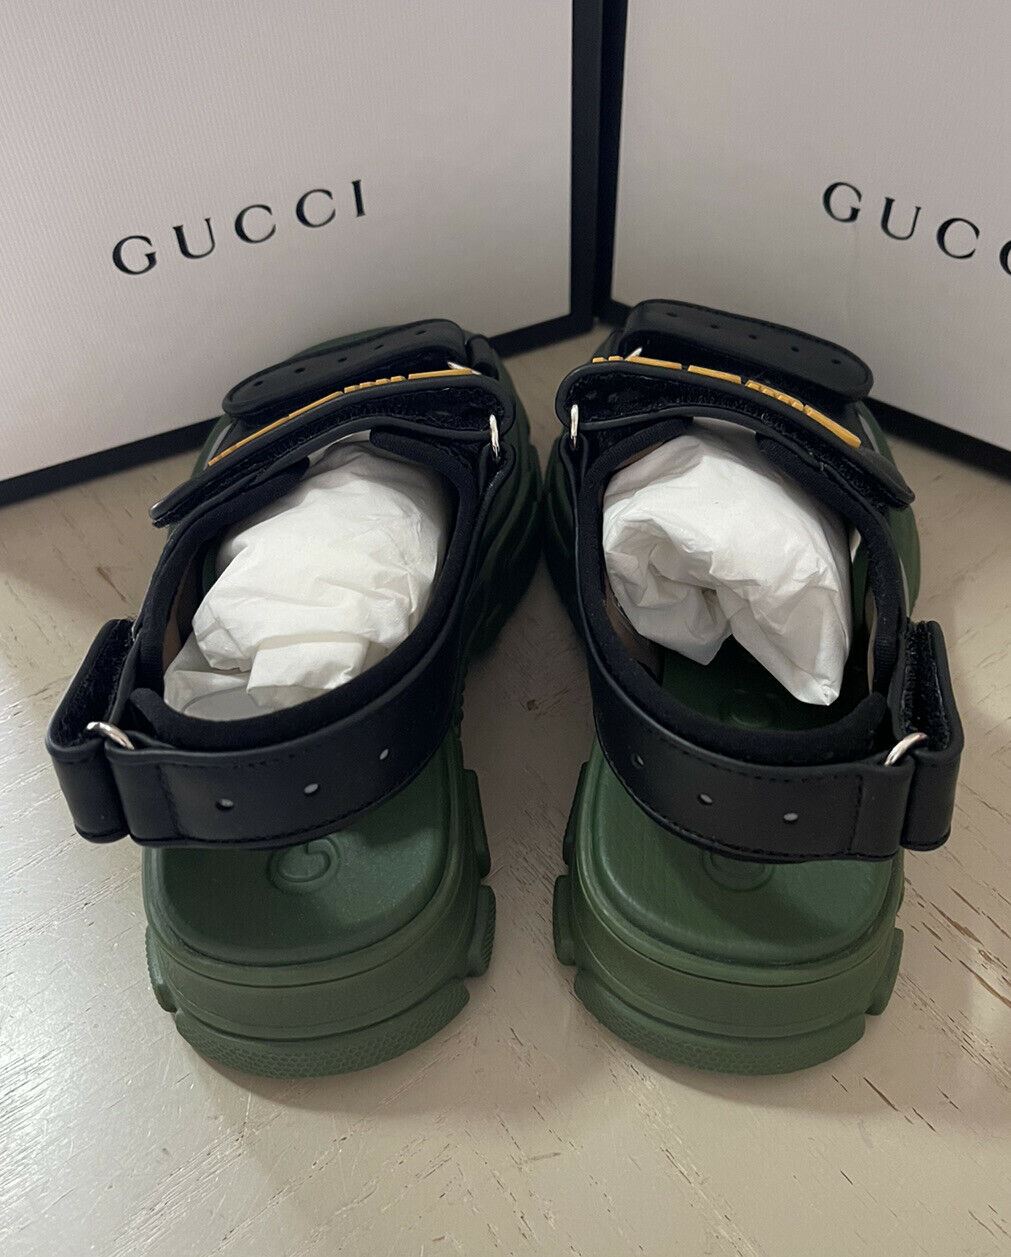 NIB $1100 Детские кожаные сандалии Gucci, черный/зеленый, размер 31/13, США, 6 лет